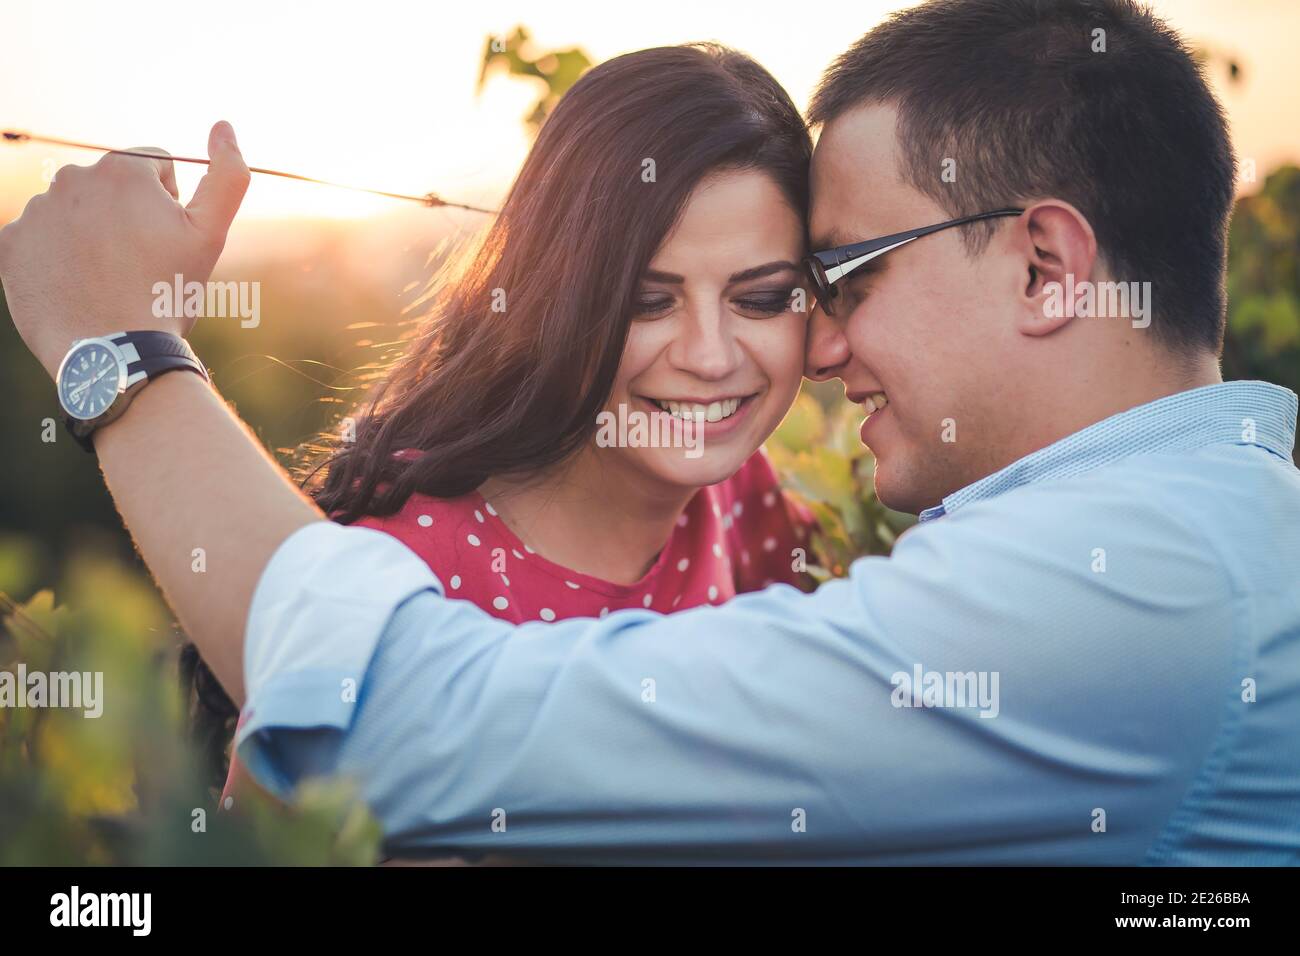 Ritratto esterno di una giovane coppia sorridente. Romanticismo, gesti romantici. Luce pomeridiana Foto Stock